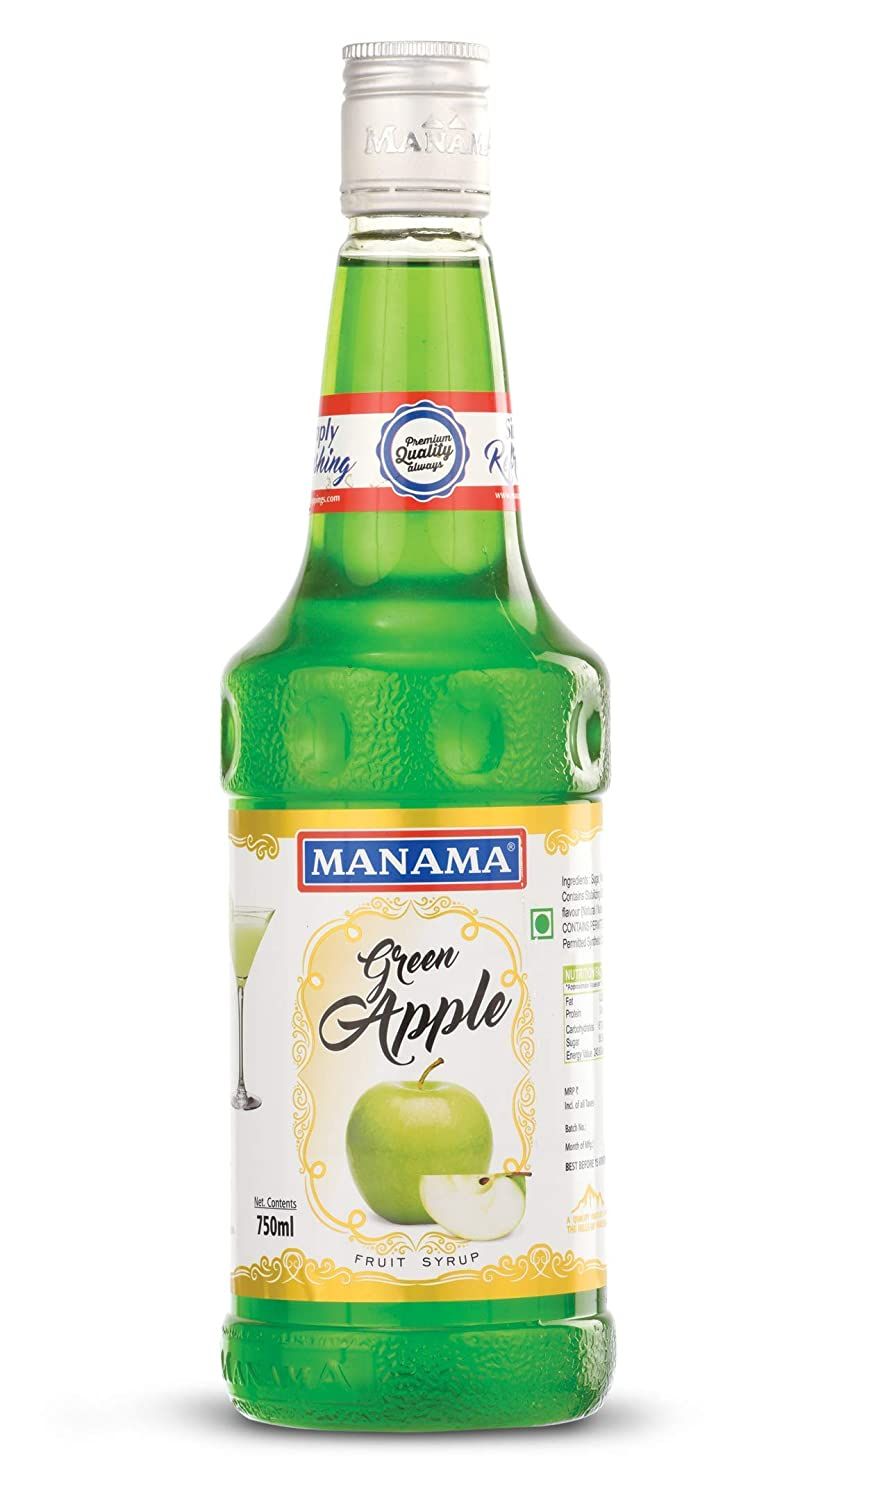 Manama Green Apple Fruit Syrup Image